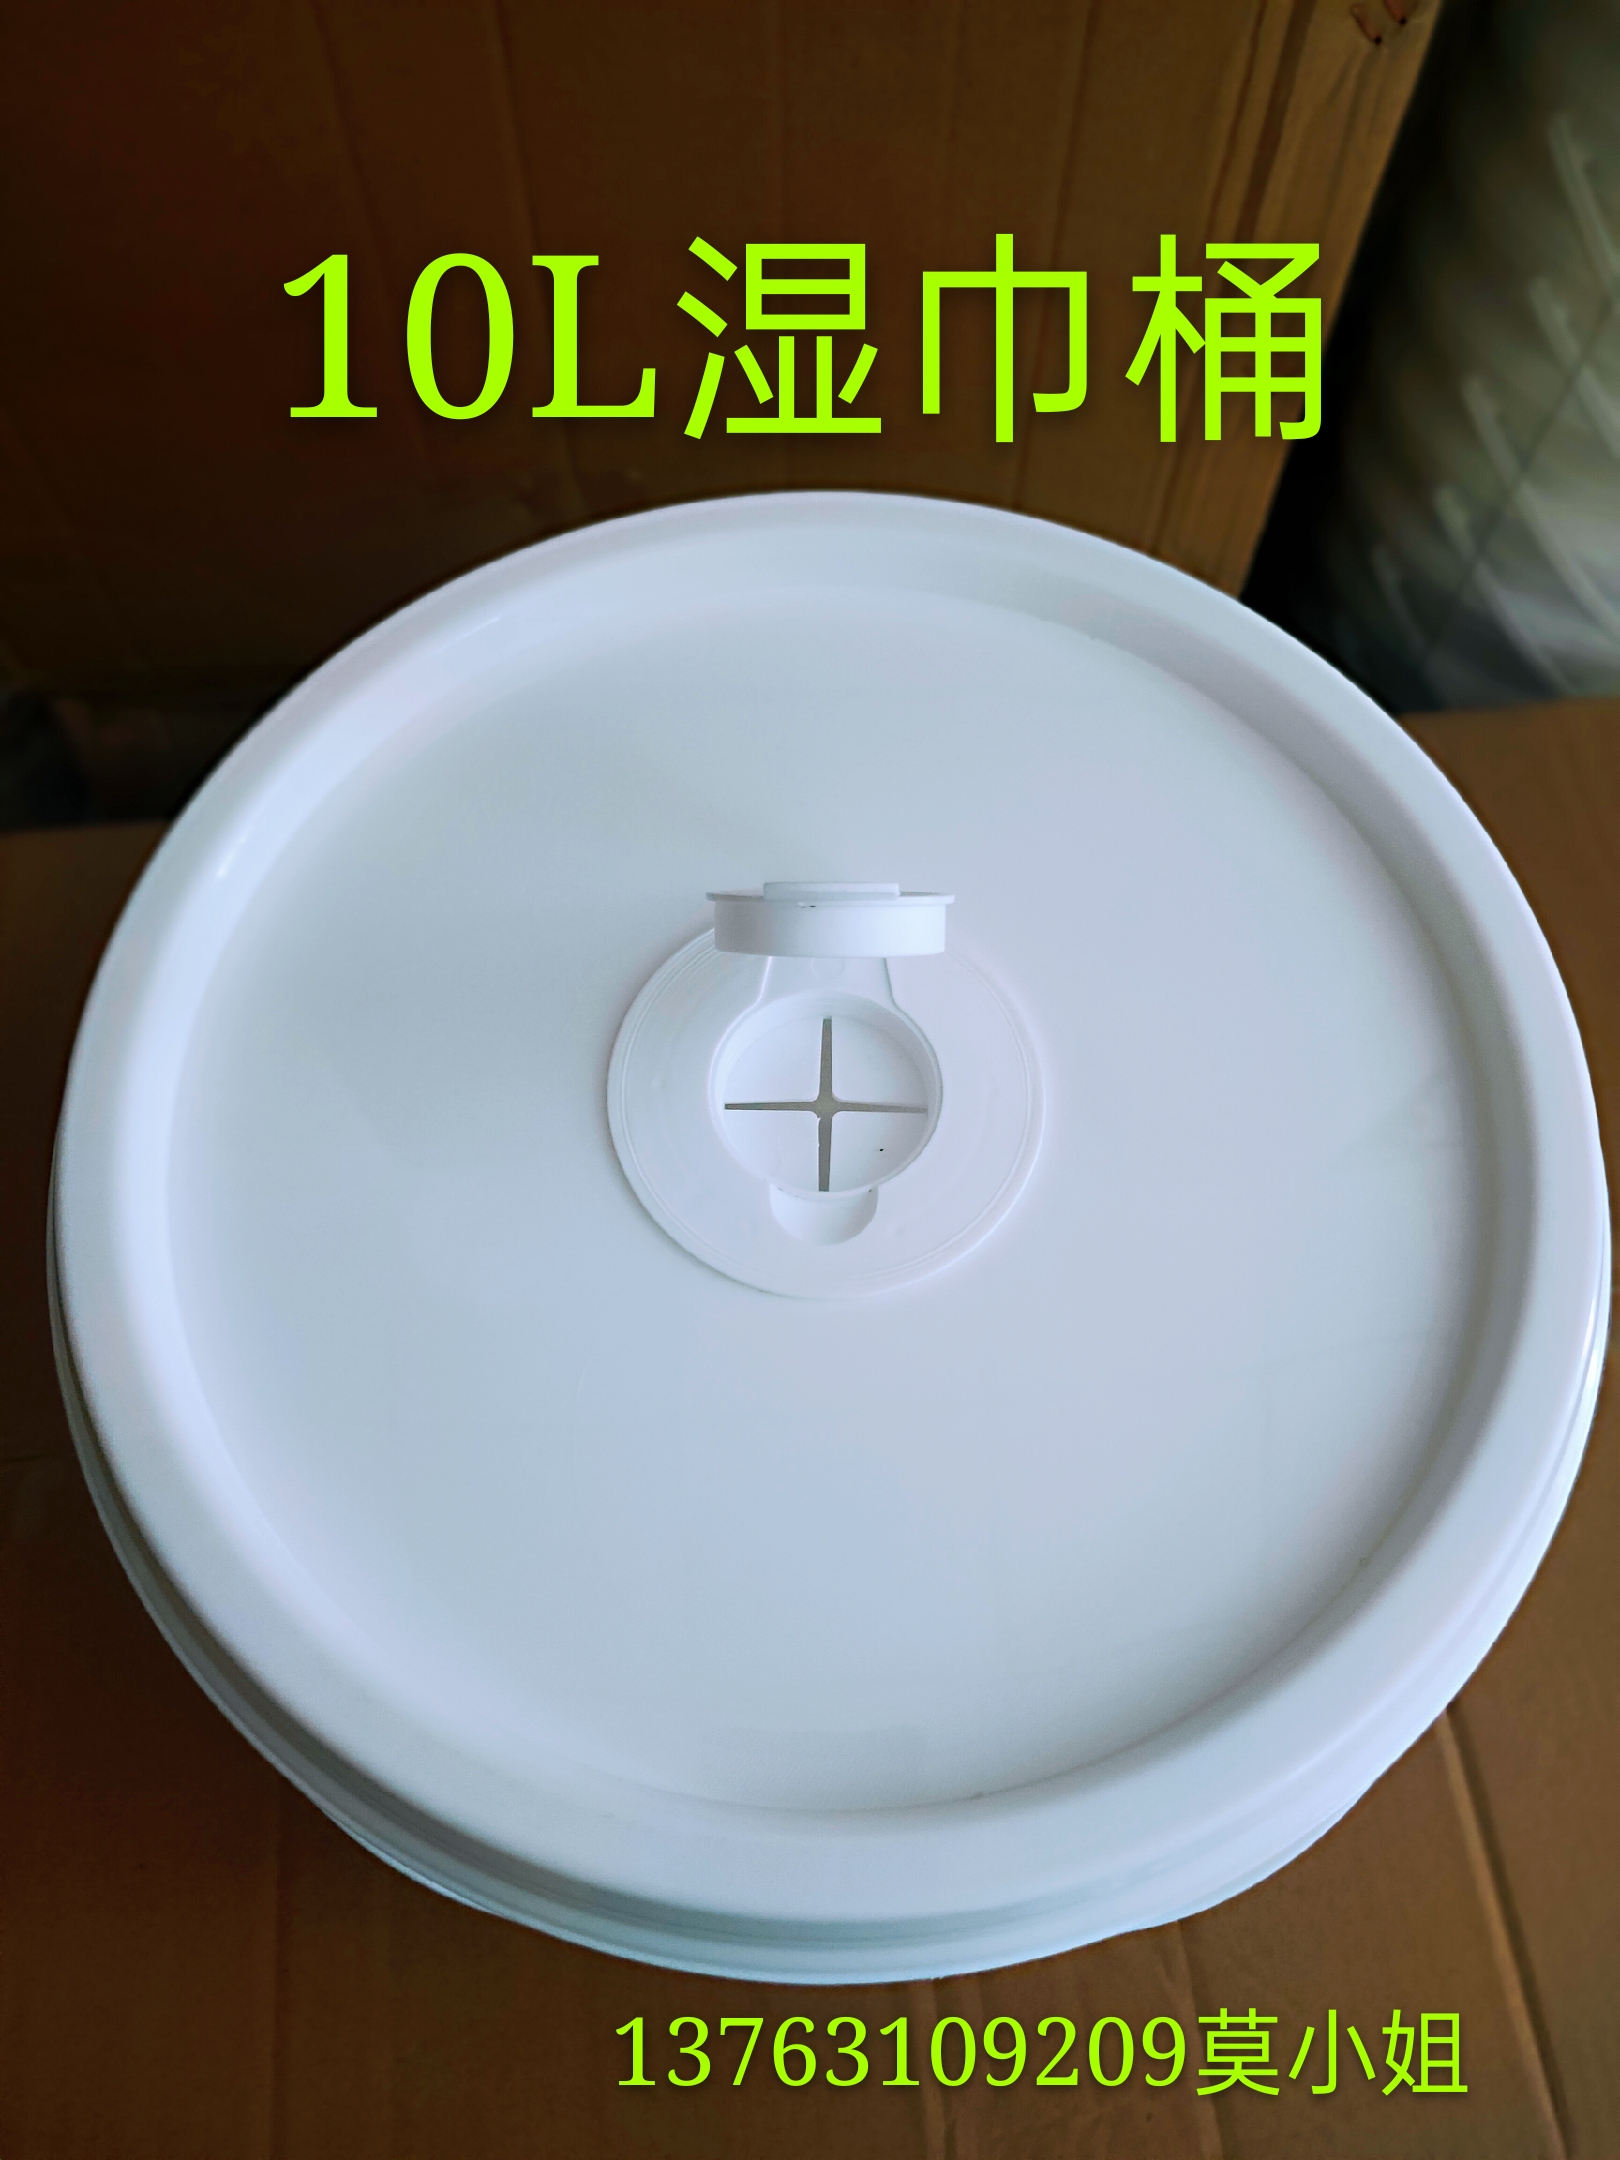 10L湿巾桶 浸润清洁工业湿巾桶图片